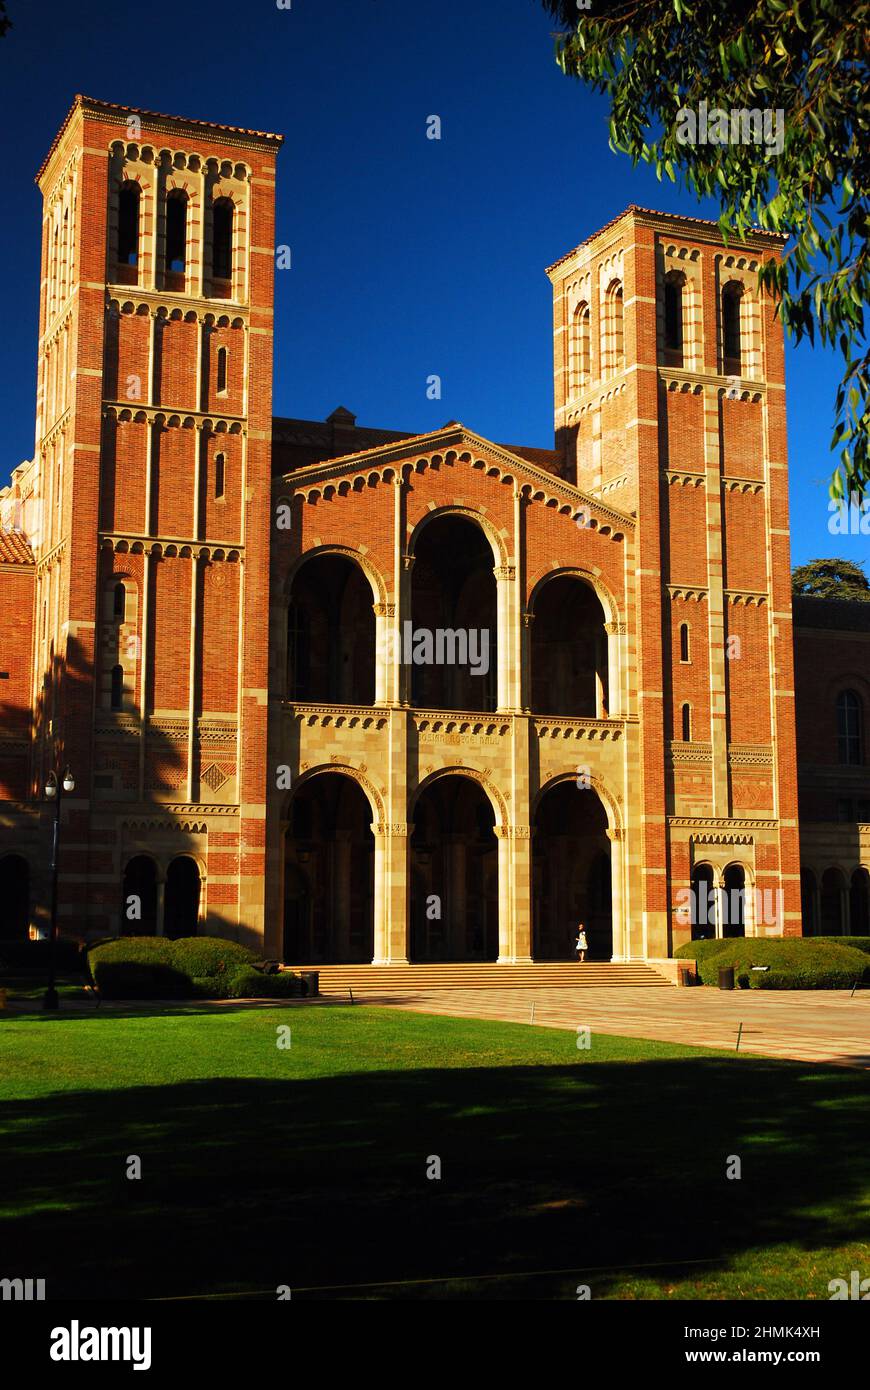 Le Royce Hall historique se trouve au cœur du campus universitaire de l'UCLA, Banque D'Images